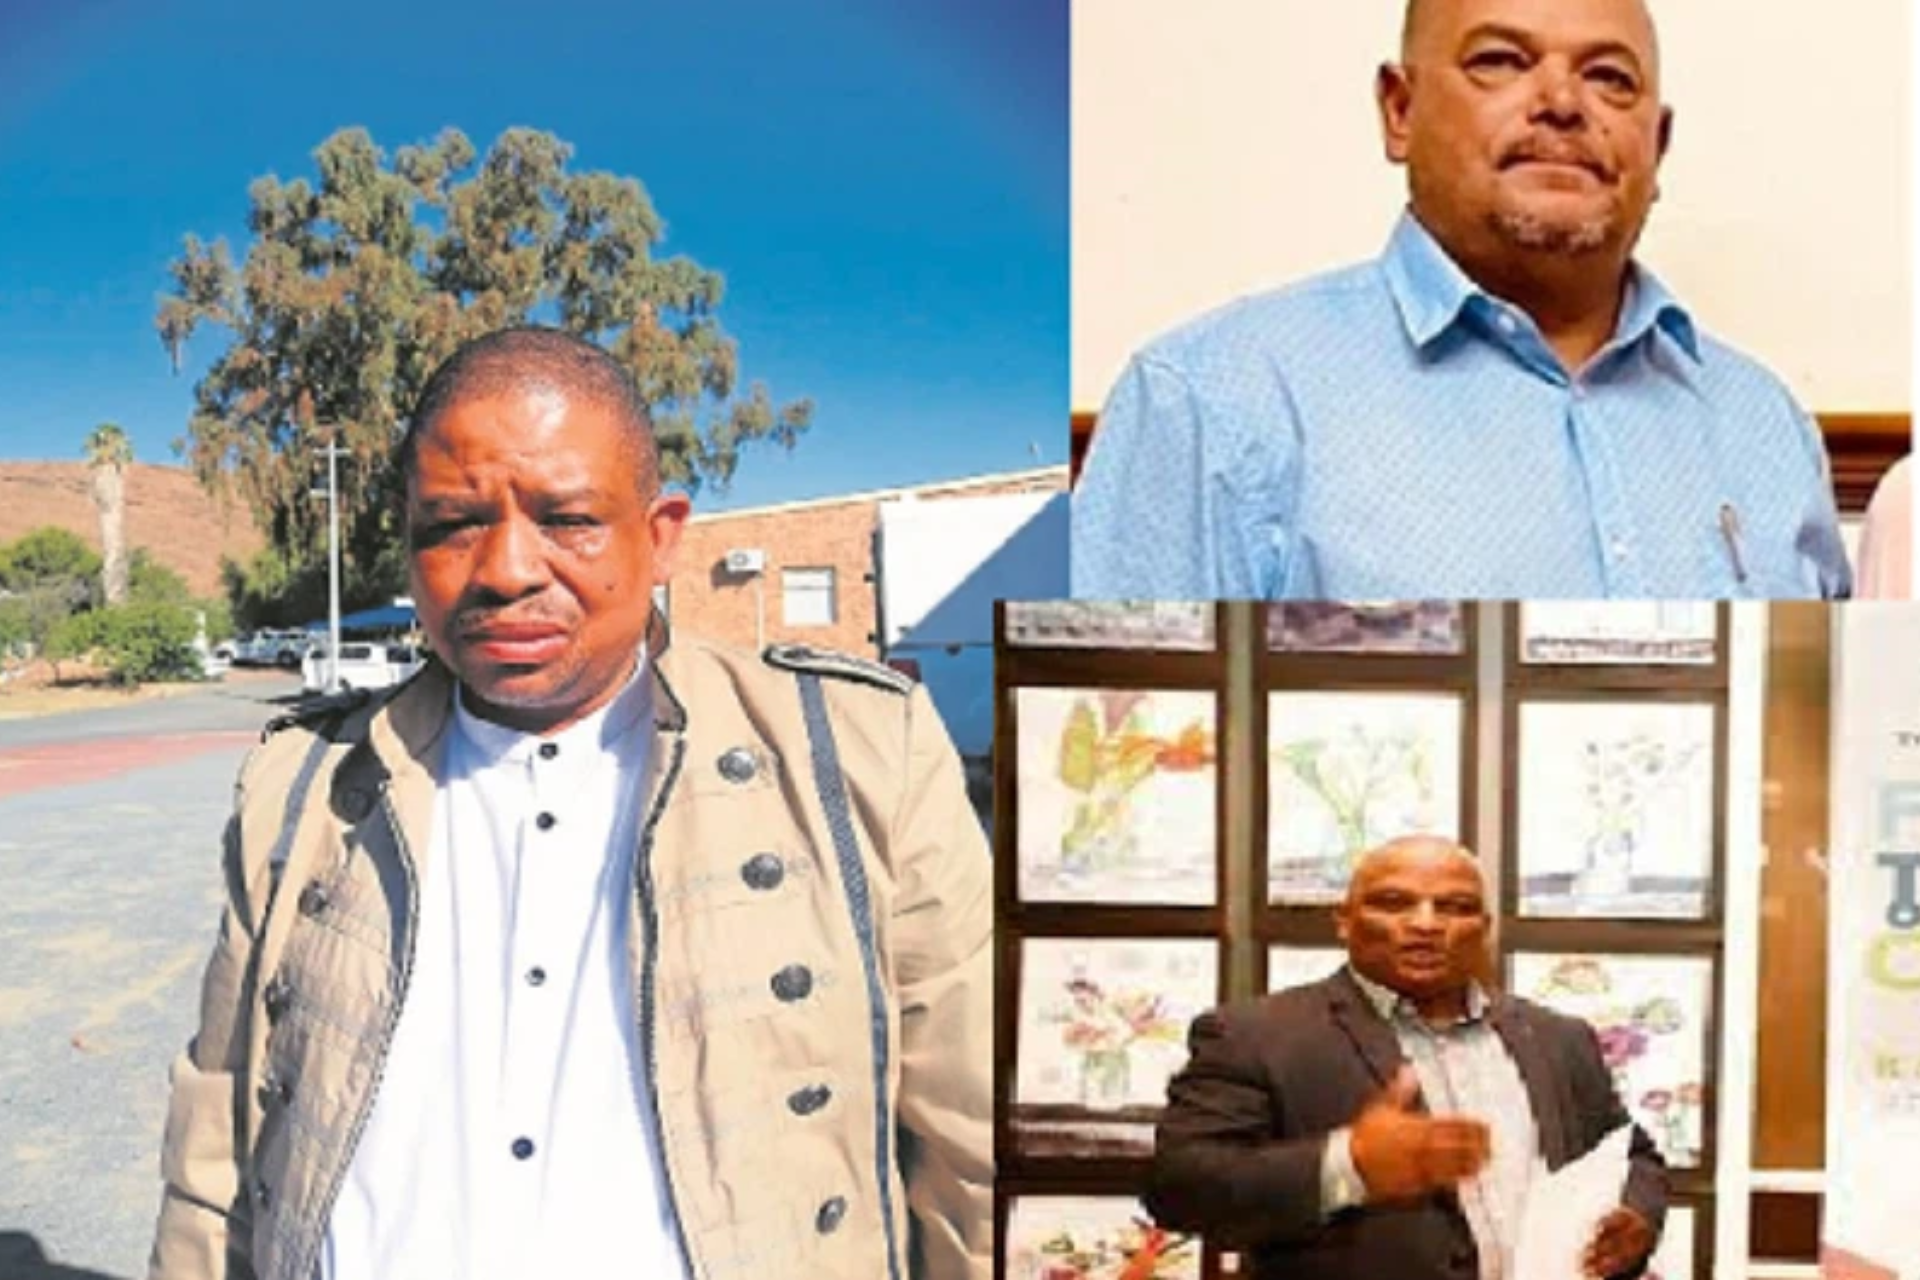 former WC municipal officials fraud